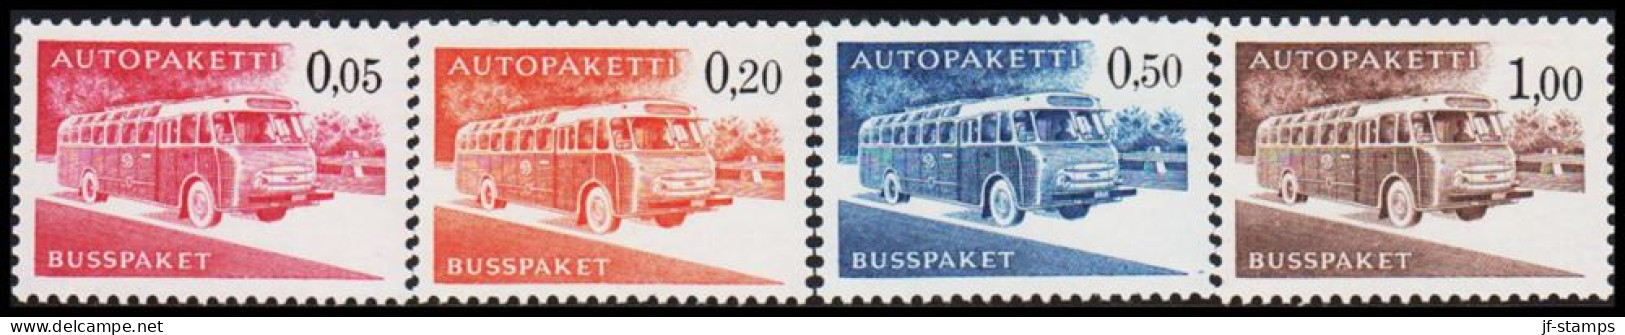 1963-1980. FINLAND. Mail Bus. Complete Set AUTOPAKETTI - BUSSPAKET Never Hinged. Normal... (Michel AP 10-13x) - JF535612 - Colis Par Autobus